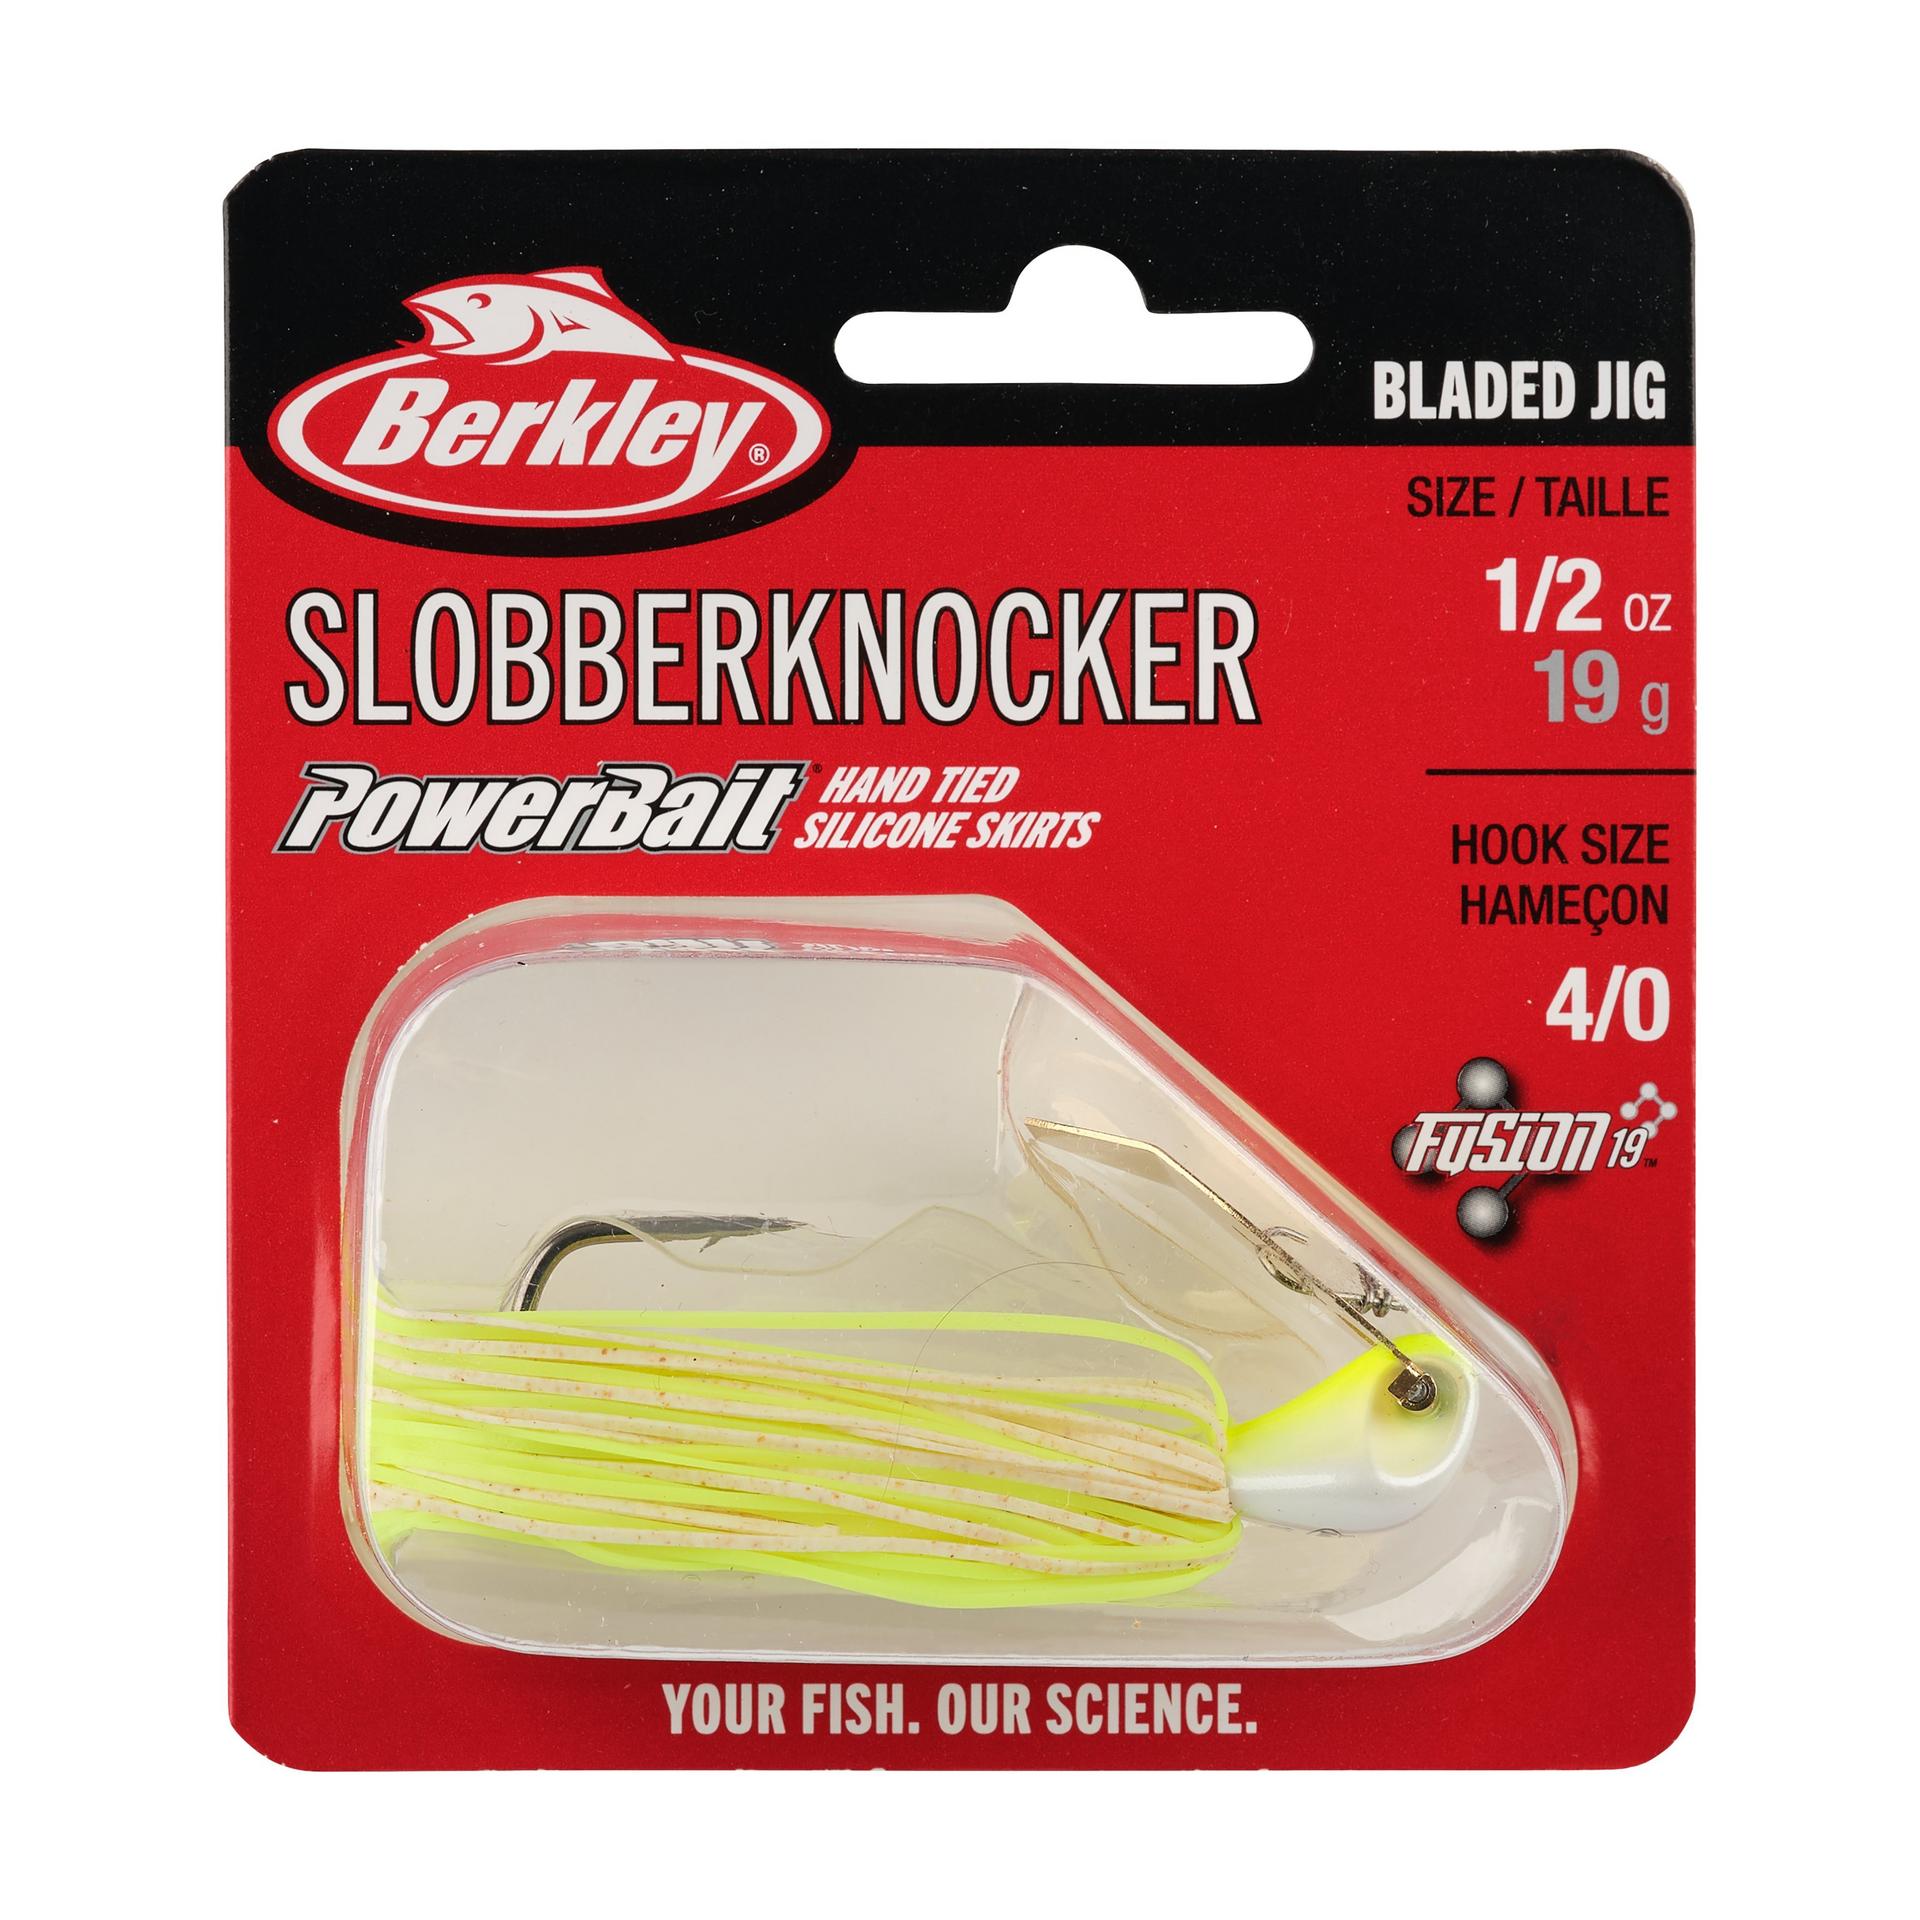 Berkley SlobberKnocker 1 2oz WhiteChartreuse PKG | Berkley Fishing